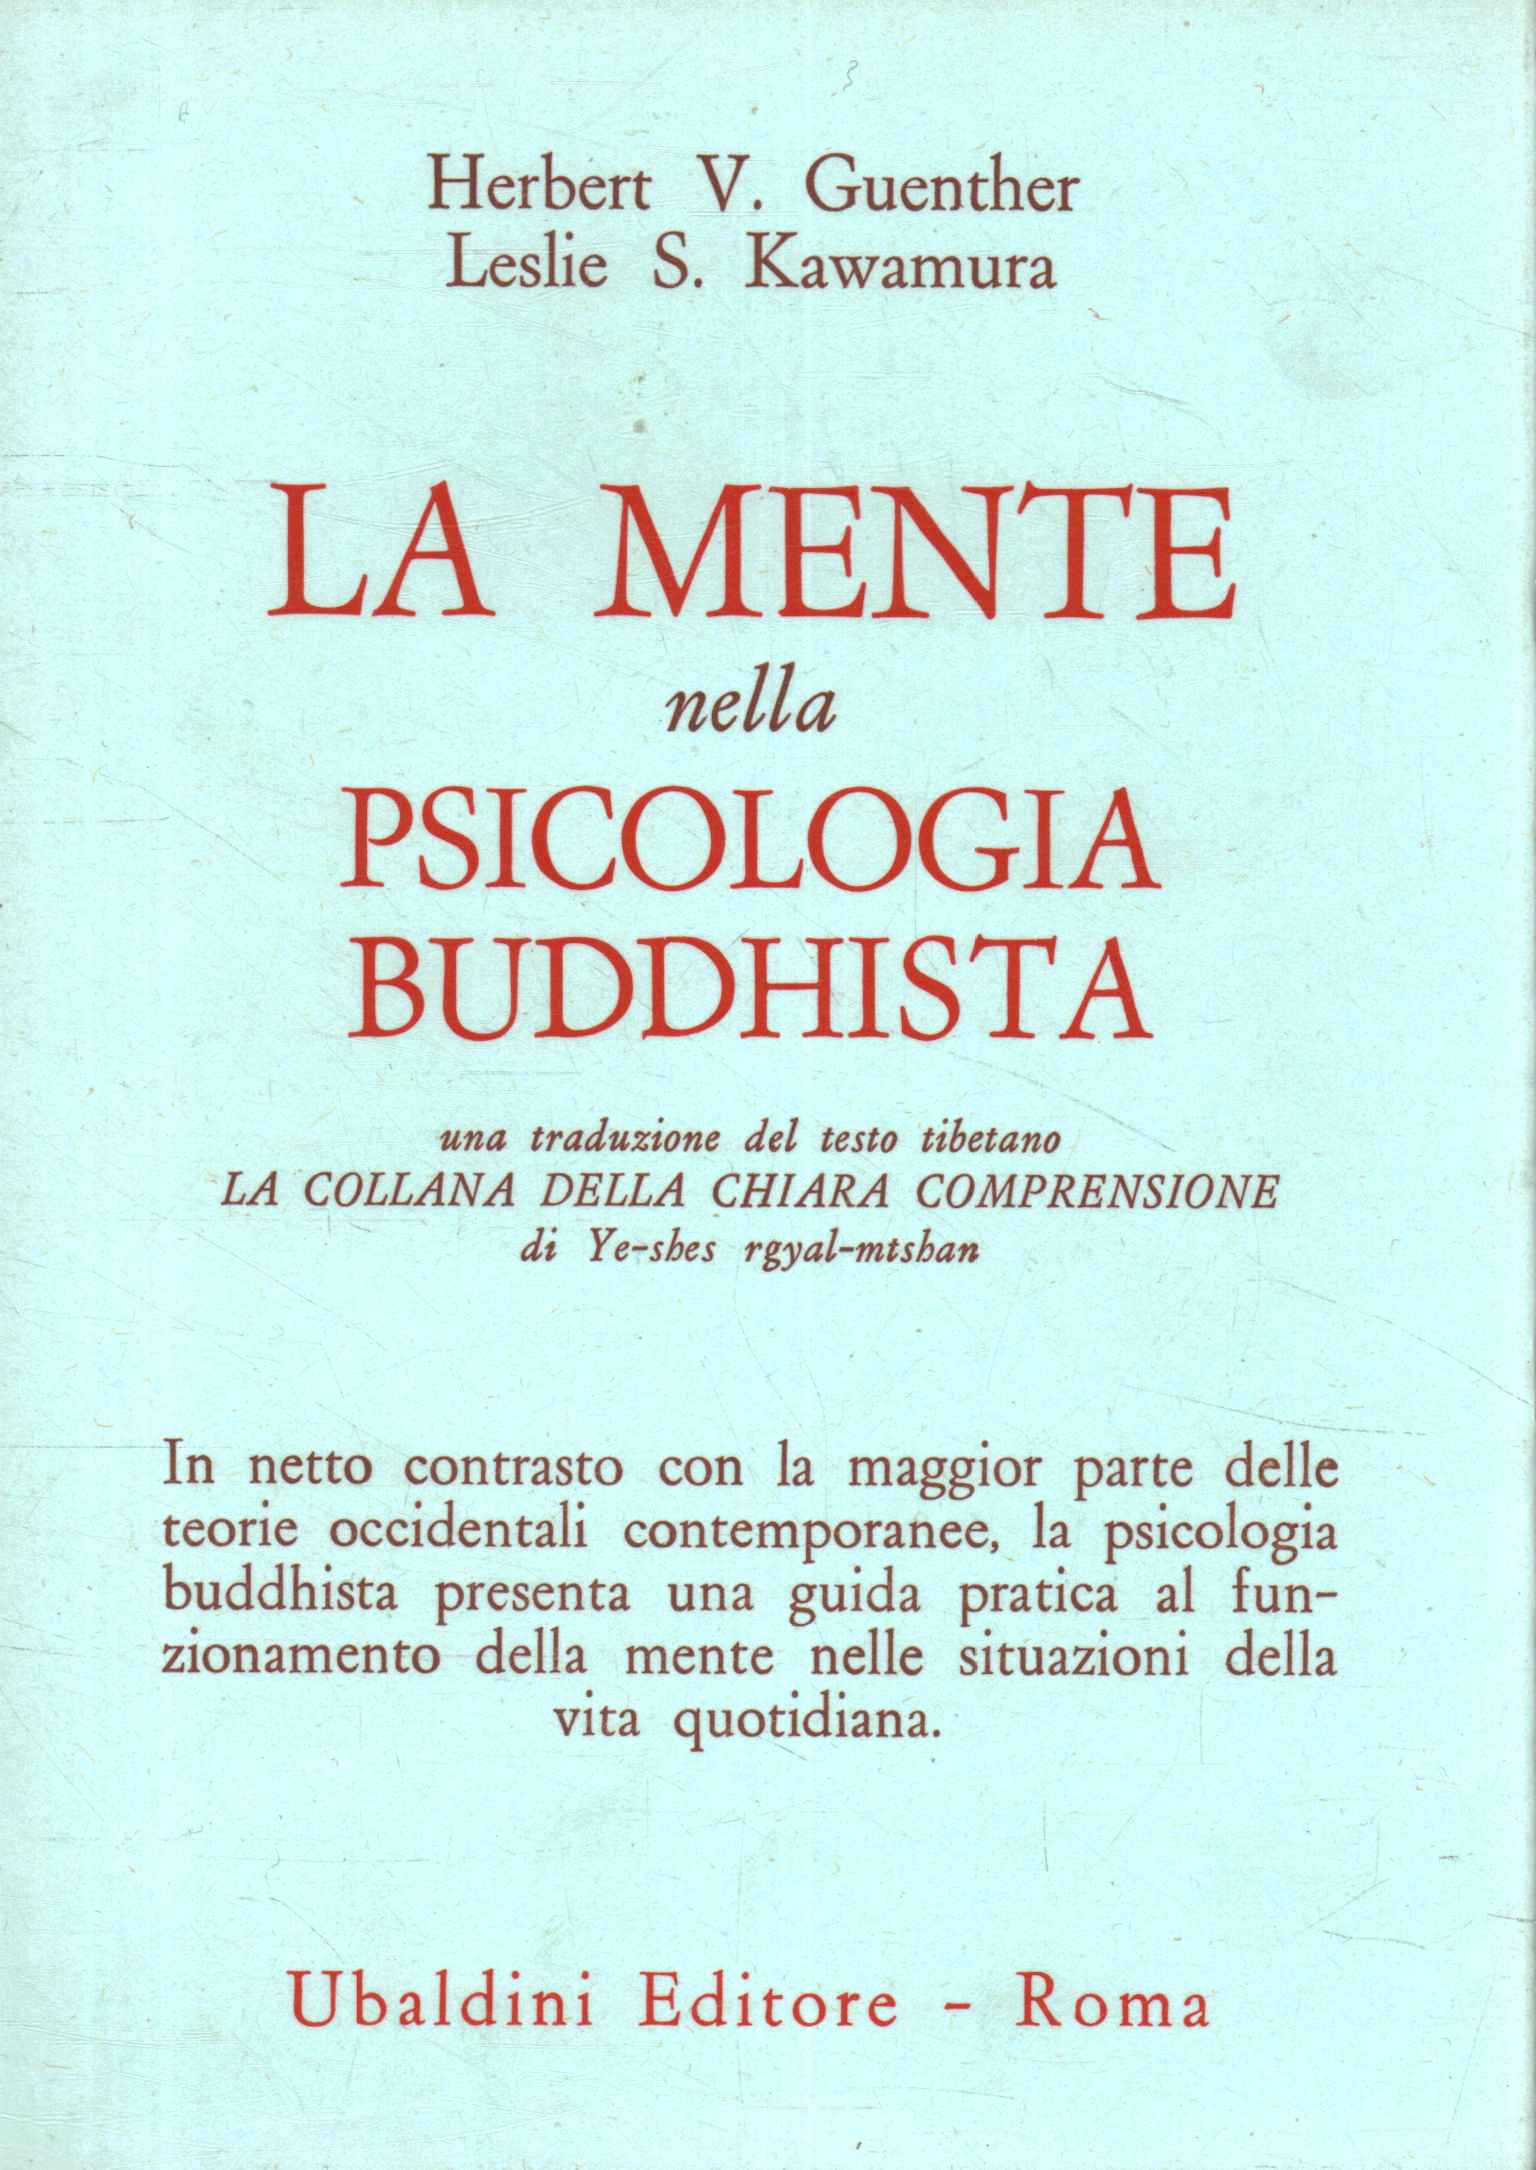 La mente nella psicologia buddhista